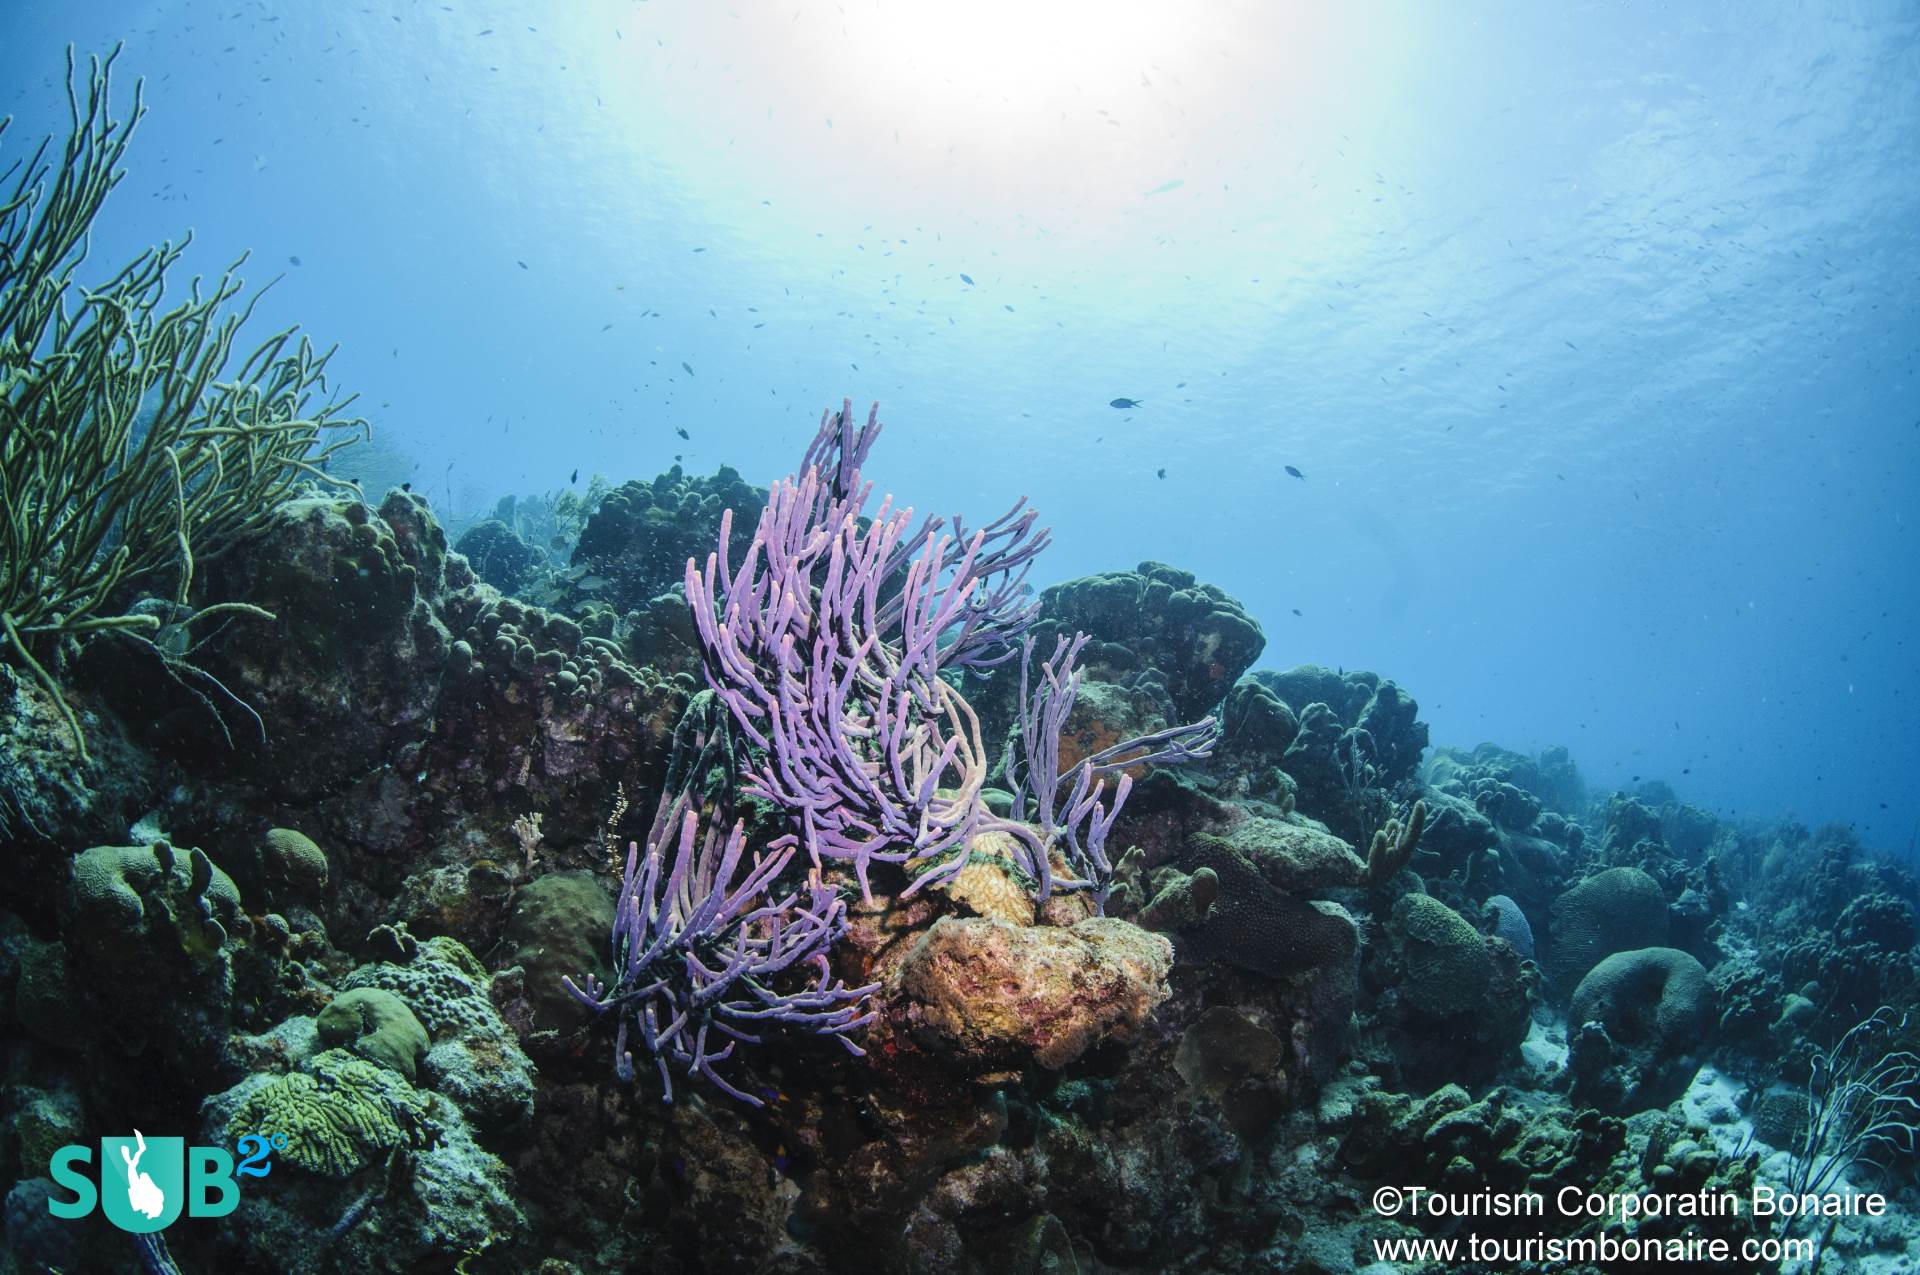 紫色绳子海绵摇曳在柔和的当前,珊瑚礁鱼轻快地在珊瑚衬底。在博内尔岛潜水壮观;1zplay潜水员常常回到岛上,一次又一次,体验景点。